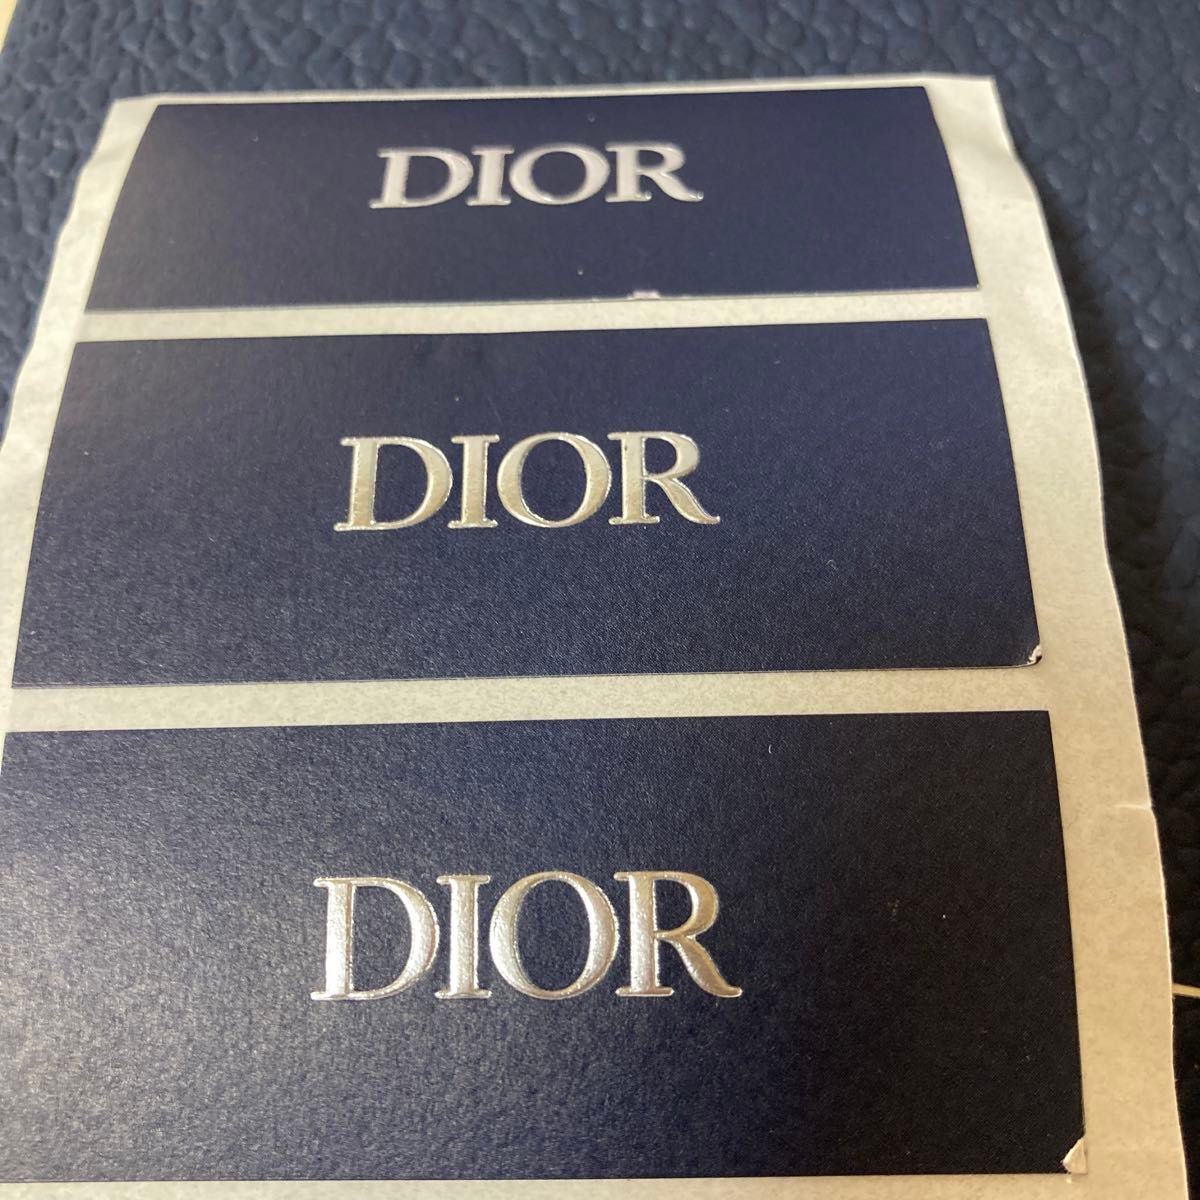 数量限定/最新Dior/ネイビー&シルバーロゴ入りシール【25枚】